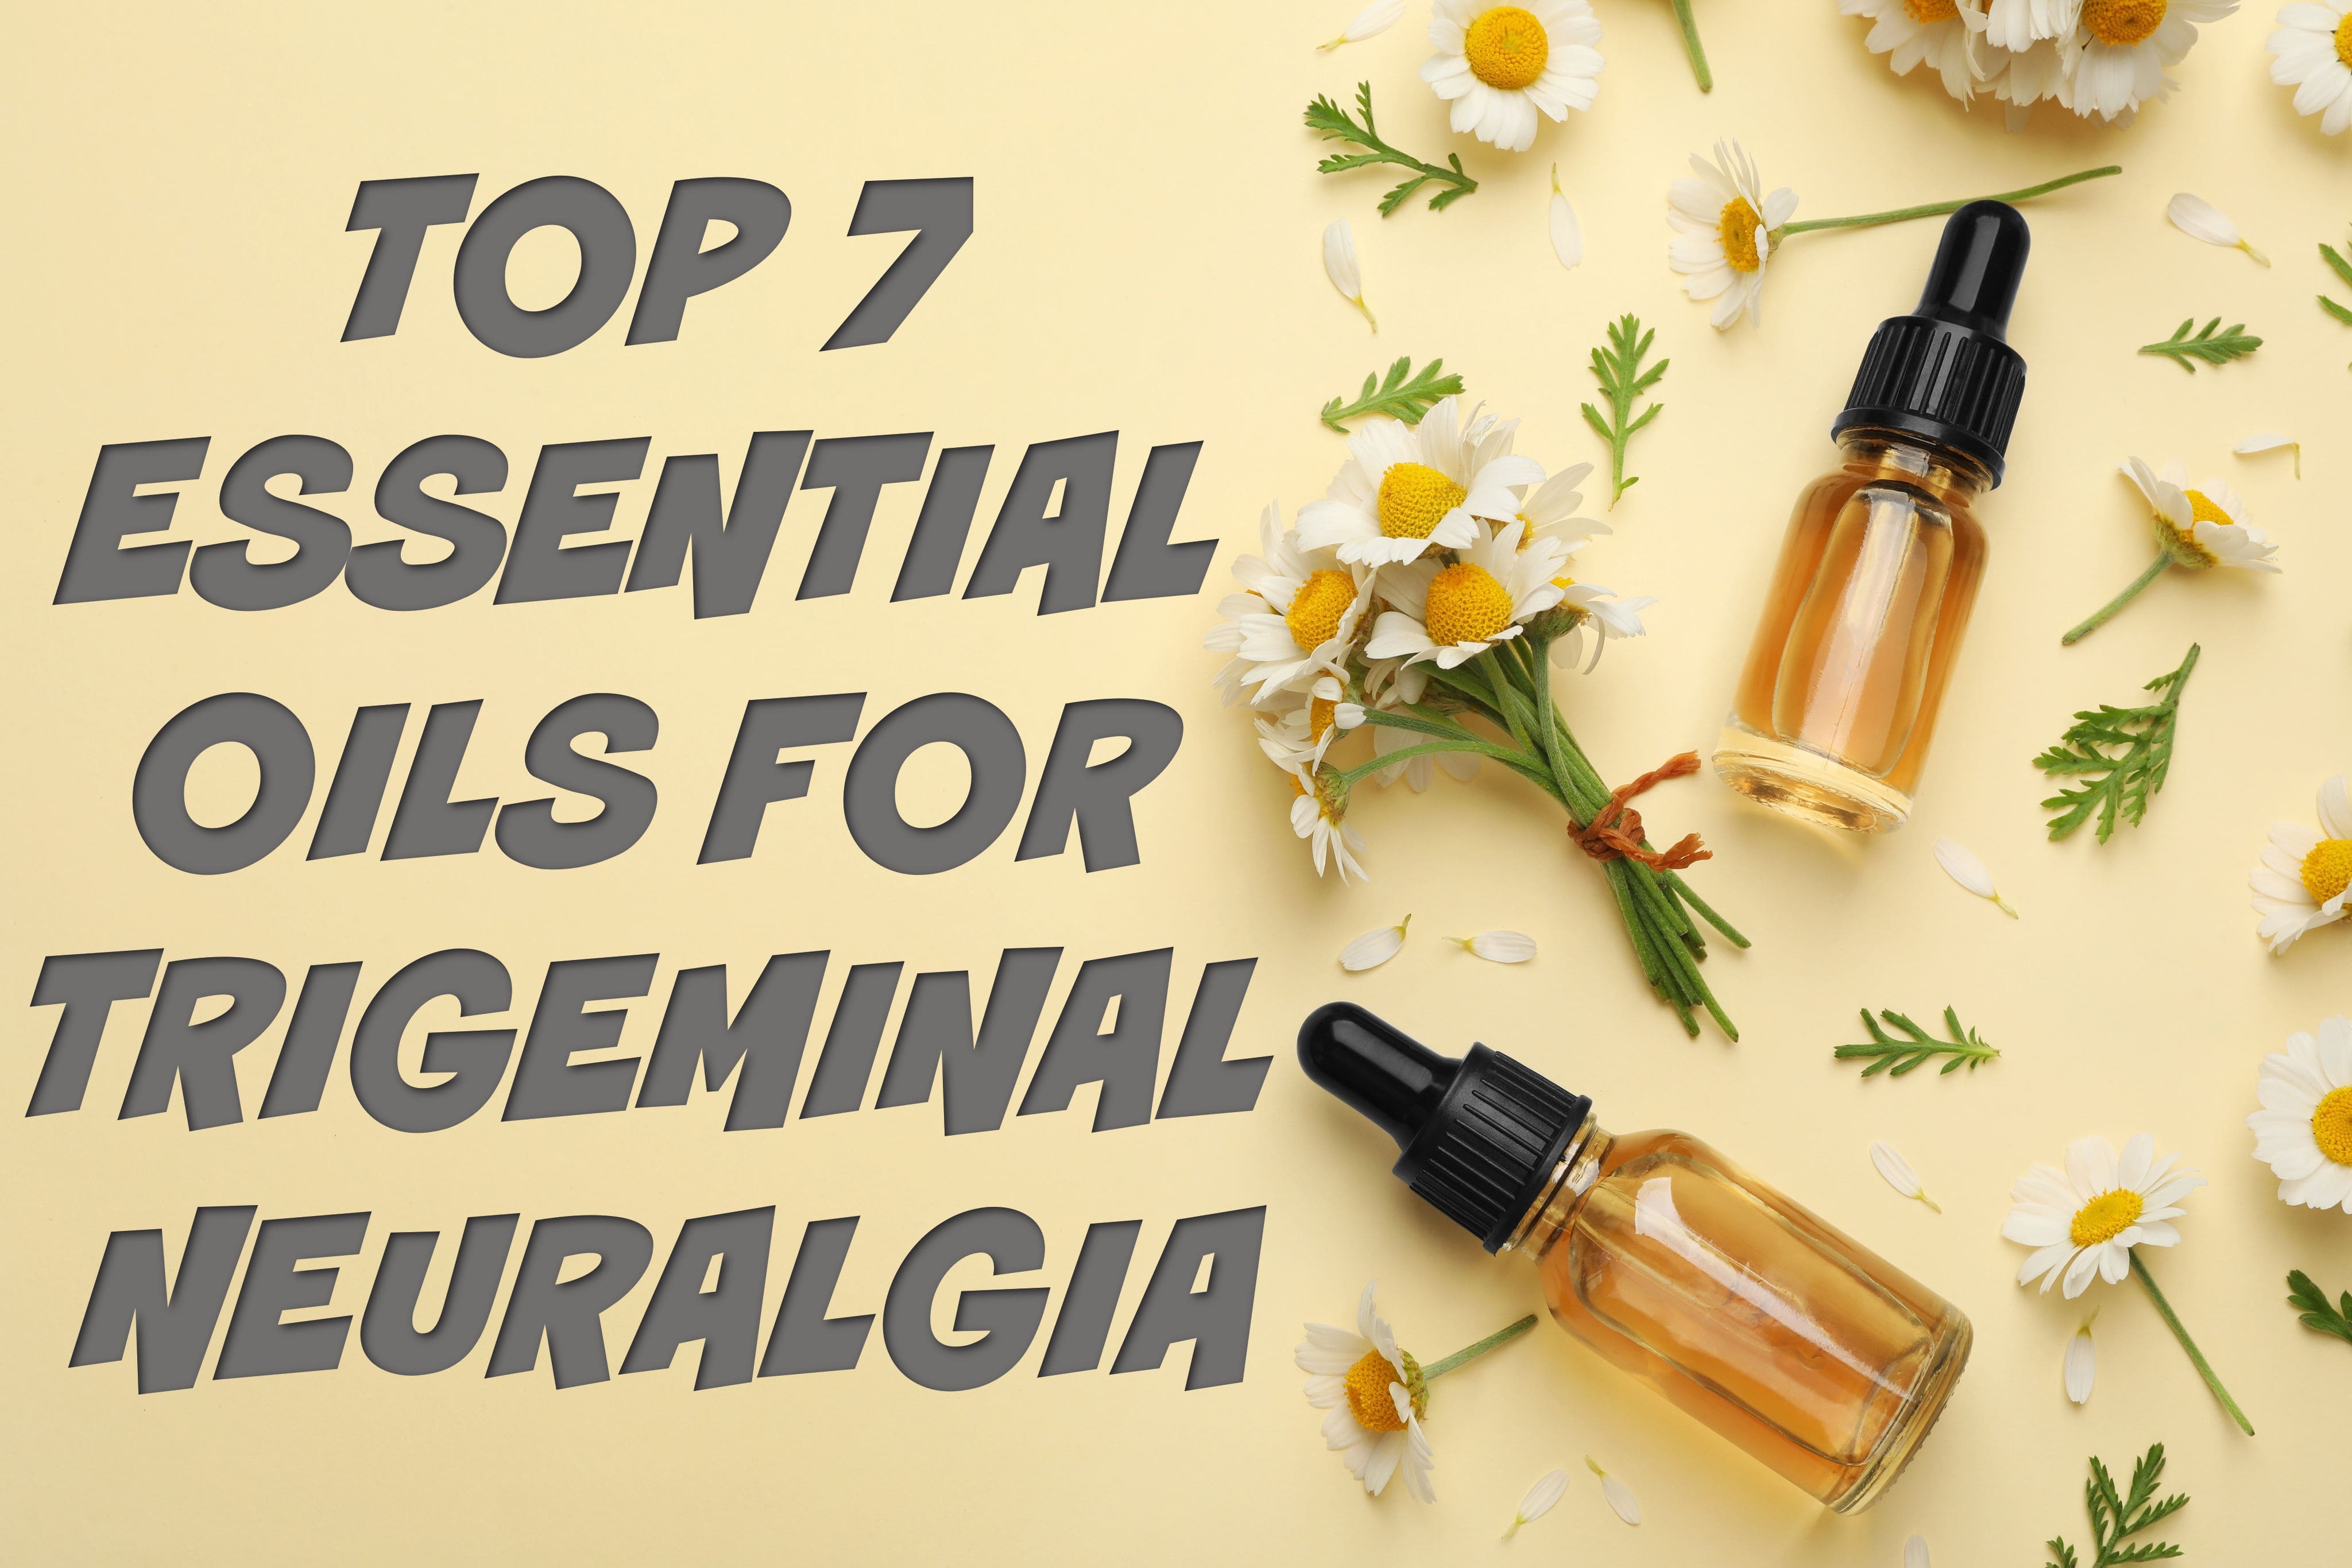 Essential oils for Trigeminal Neuralgia